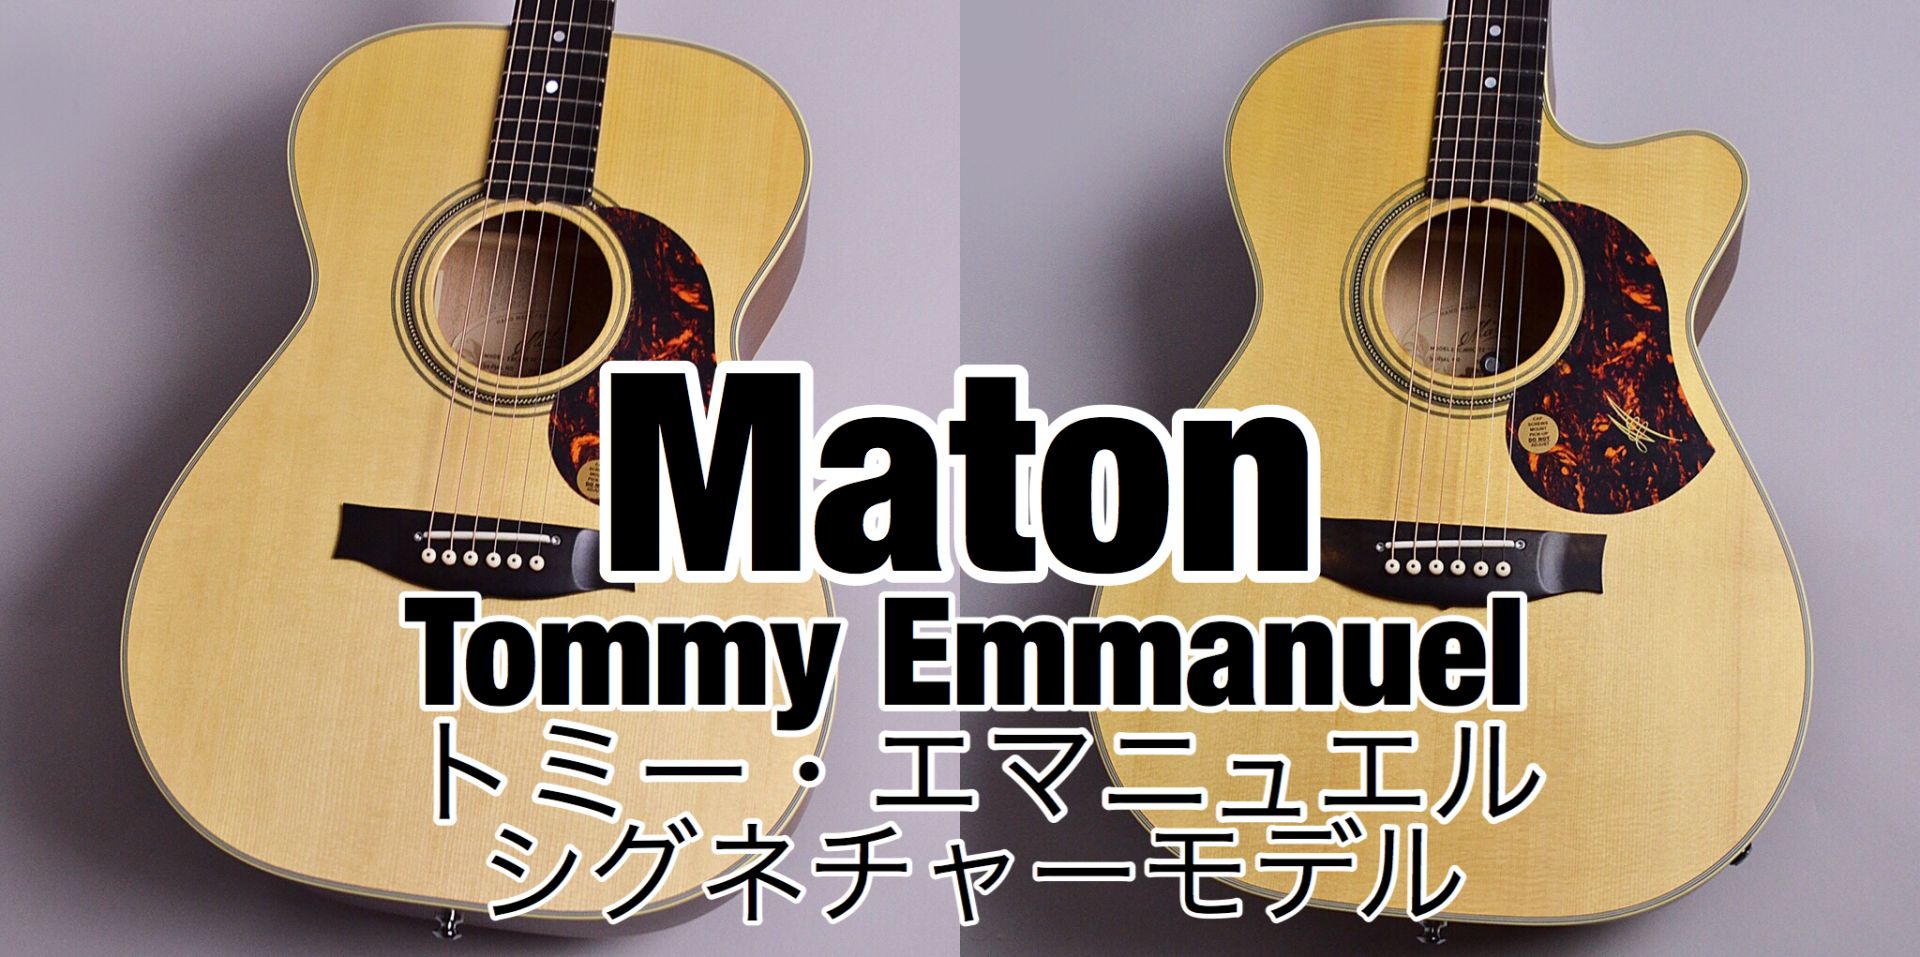 *「トミー・エマニュエル」シグネチャーモデルのご紹介 Maton(メイトン)のラインナップの中でも人気が高いのがTommy Emmanuel（トミー・エマニュエル）のシグネチャーシリーズ。 小ぶりのボディながら抜群の音の立ち上がりの良さとソロギターやフィンガーピッキングに特にオススメの豊かなサウンド […]